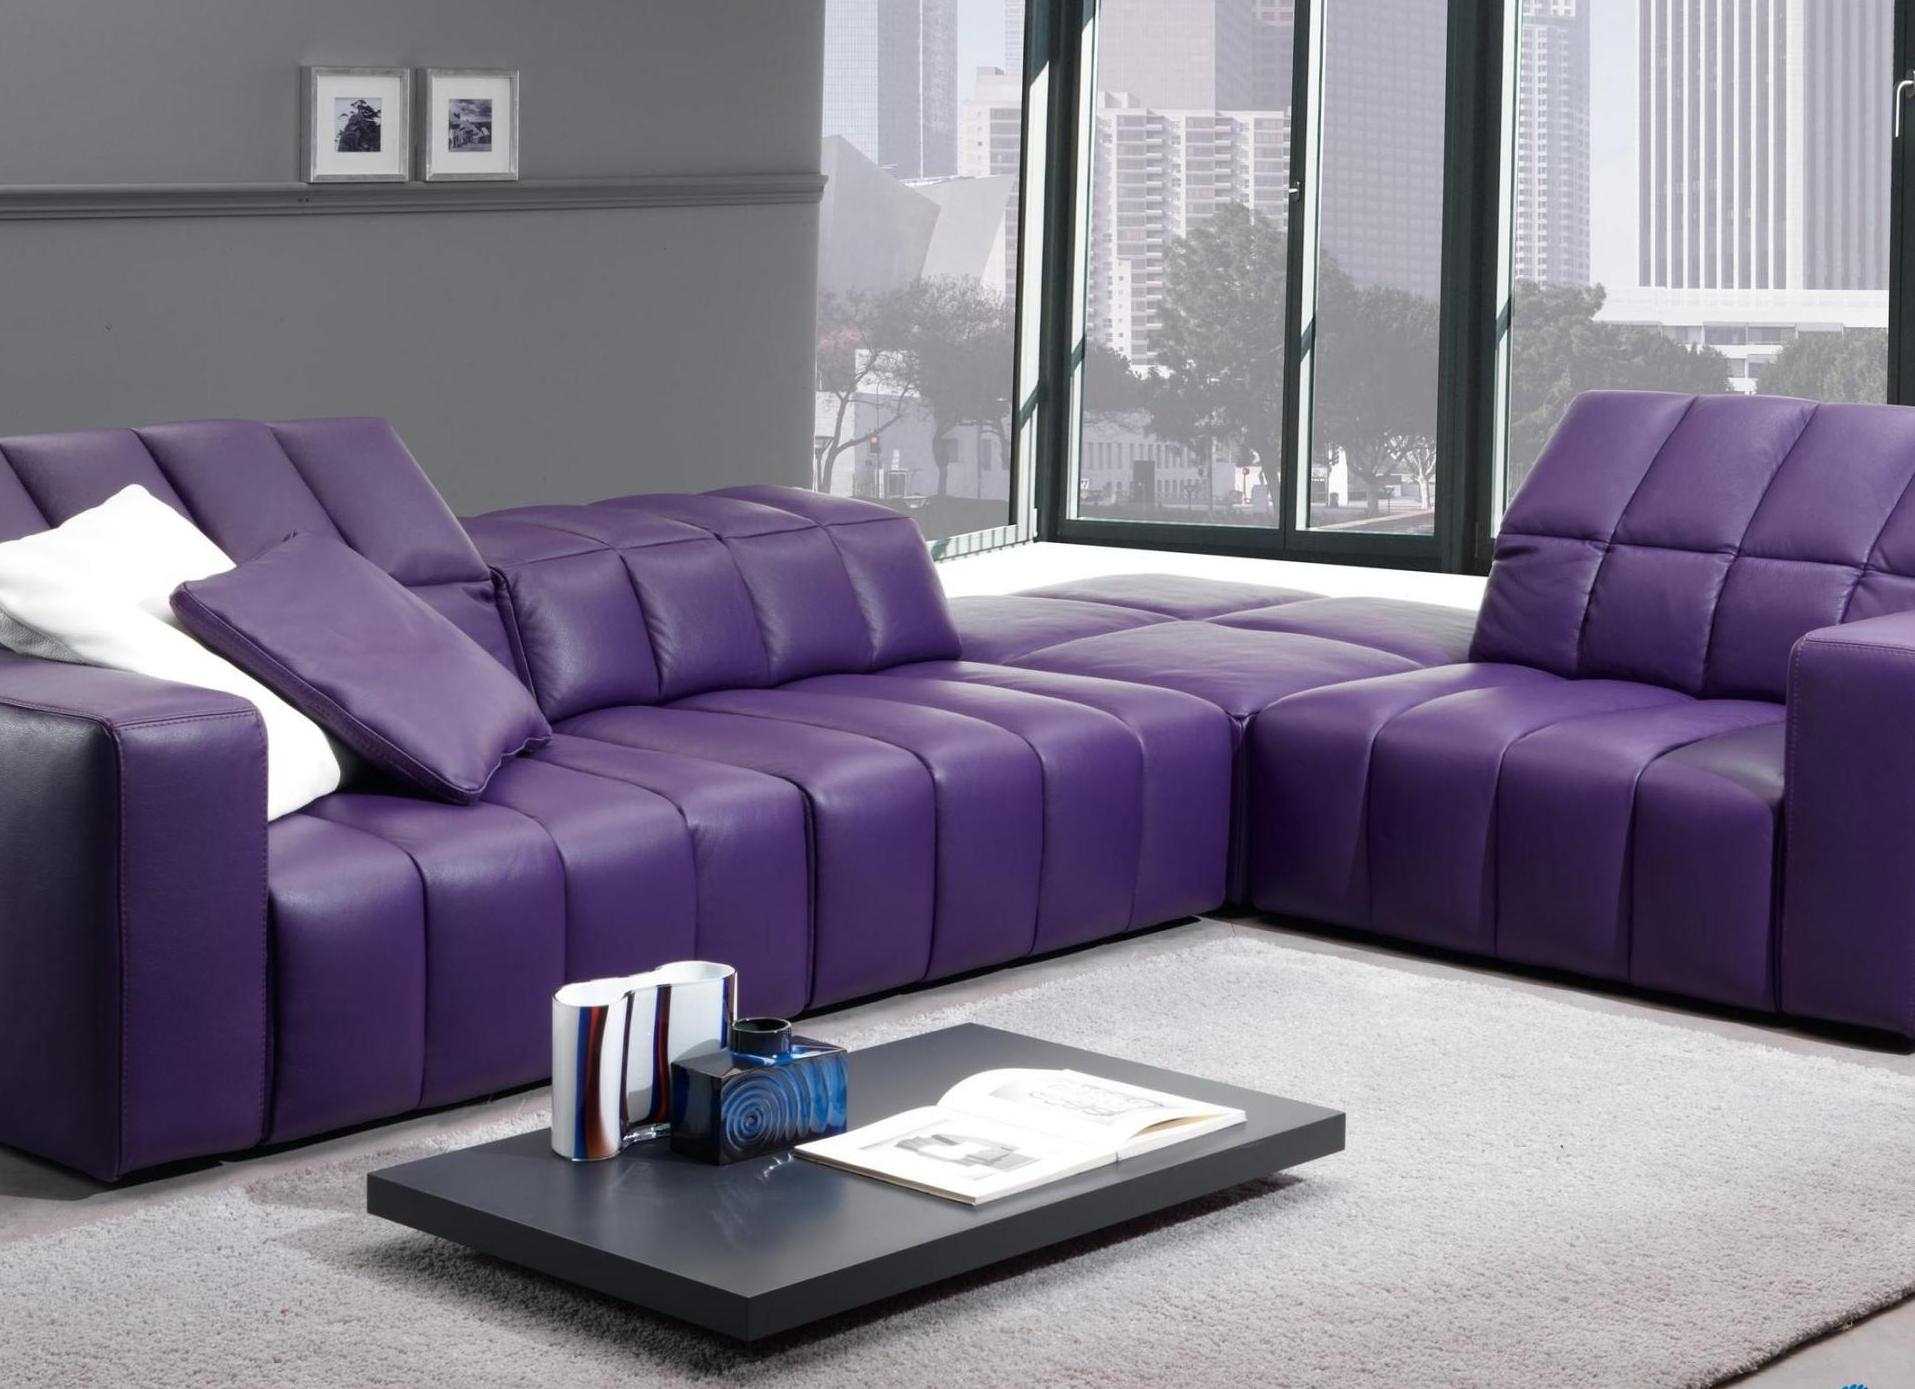 világos lila kanapé a hálószoba kialakításában